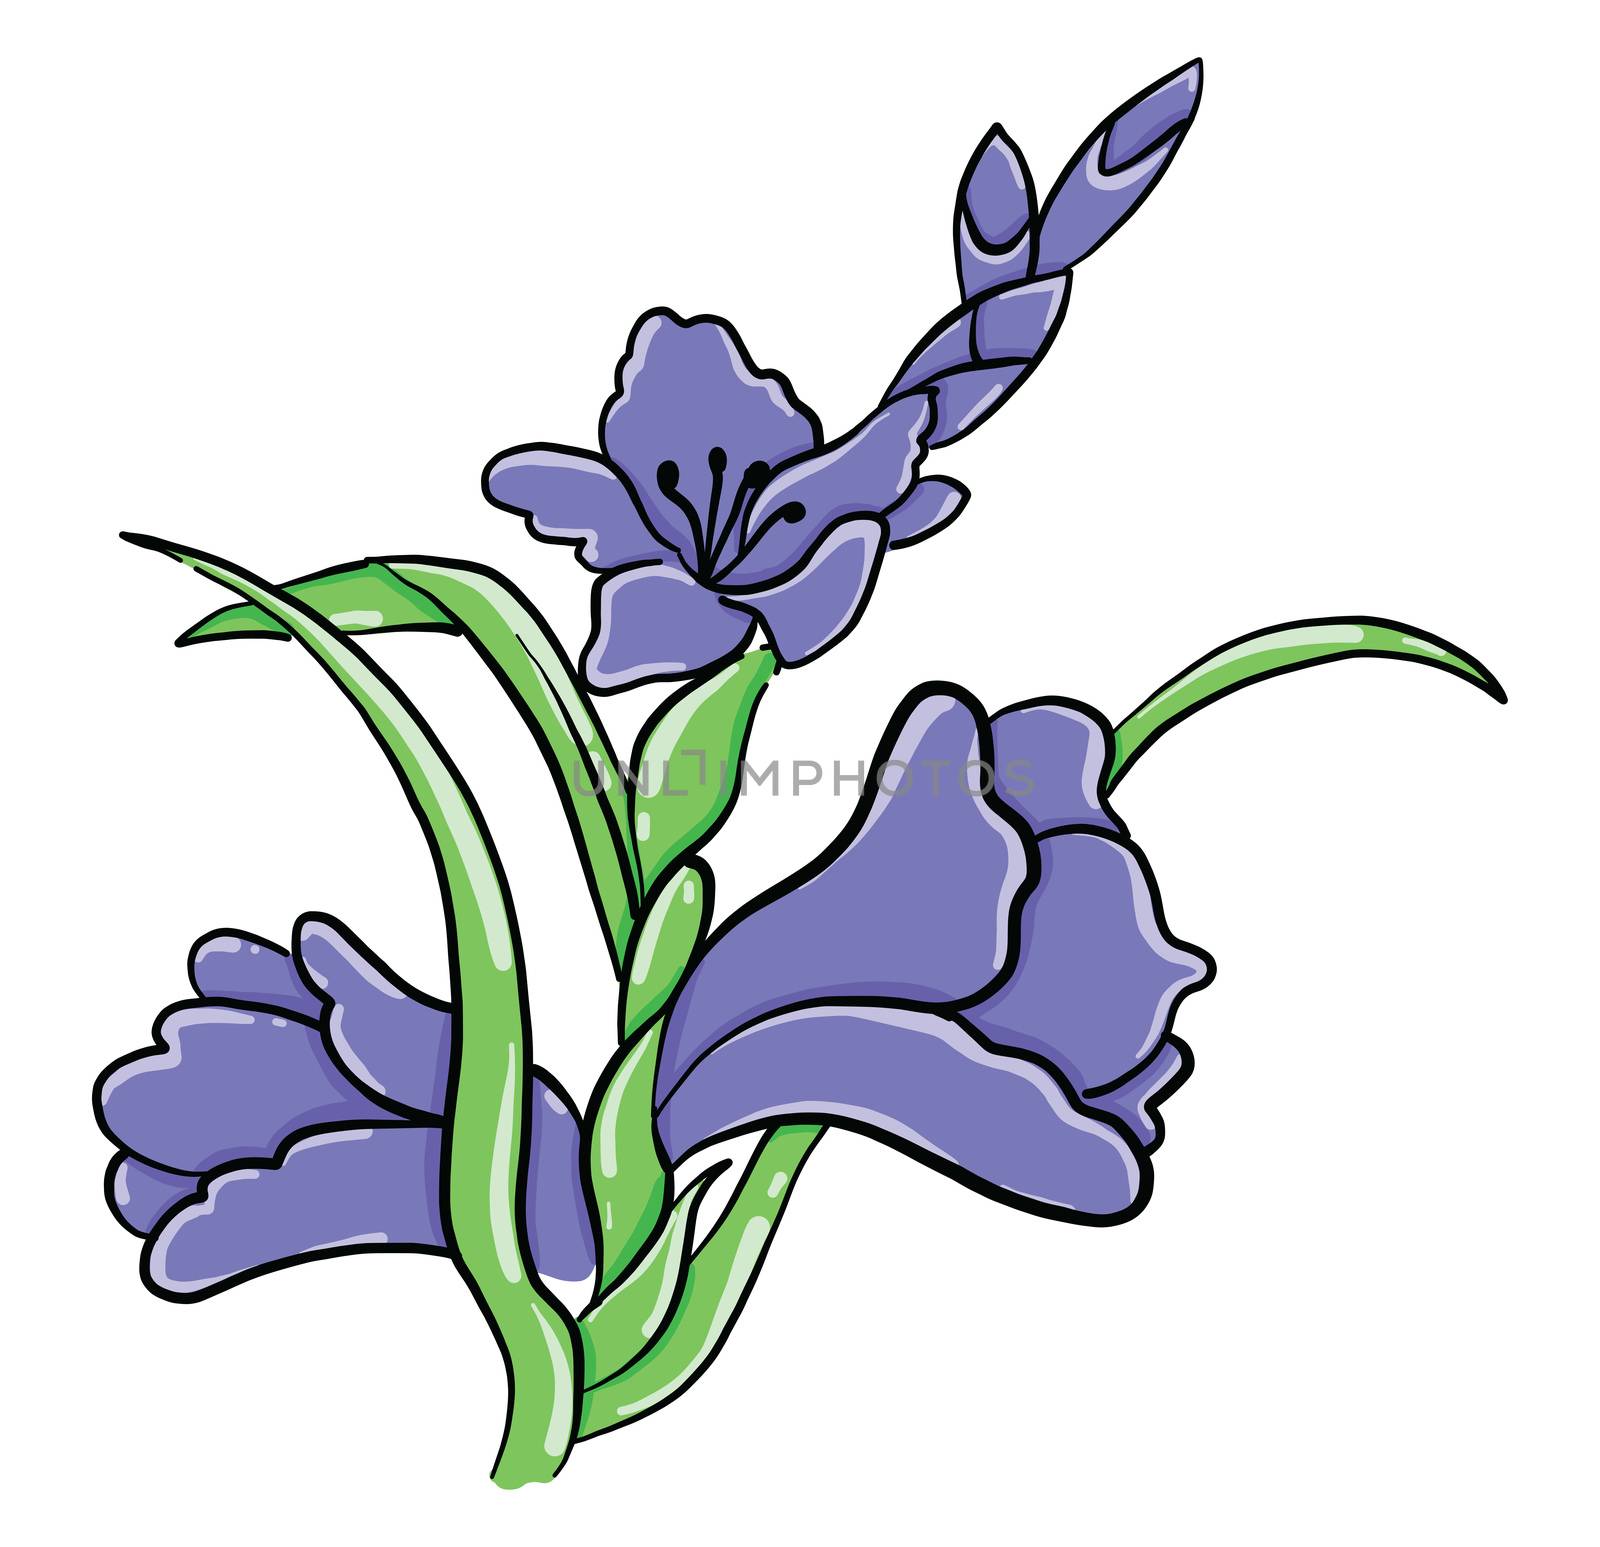 Gladiolus flower , illustration, vector on white background by Morphart